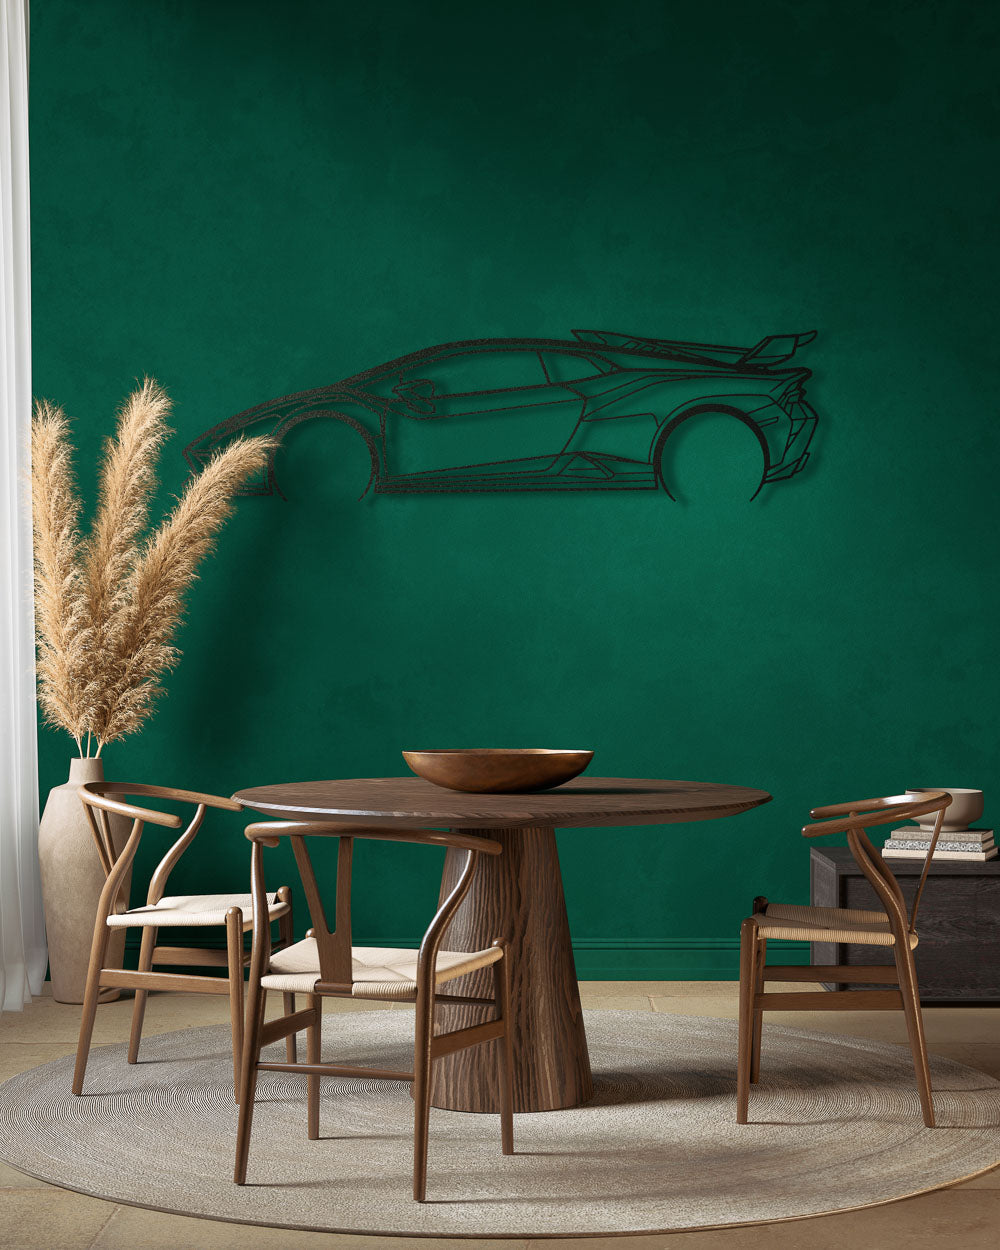 Nos - Lamborghini Huracan STO - Sagoma in Metallo di Design Dettagliata